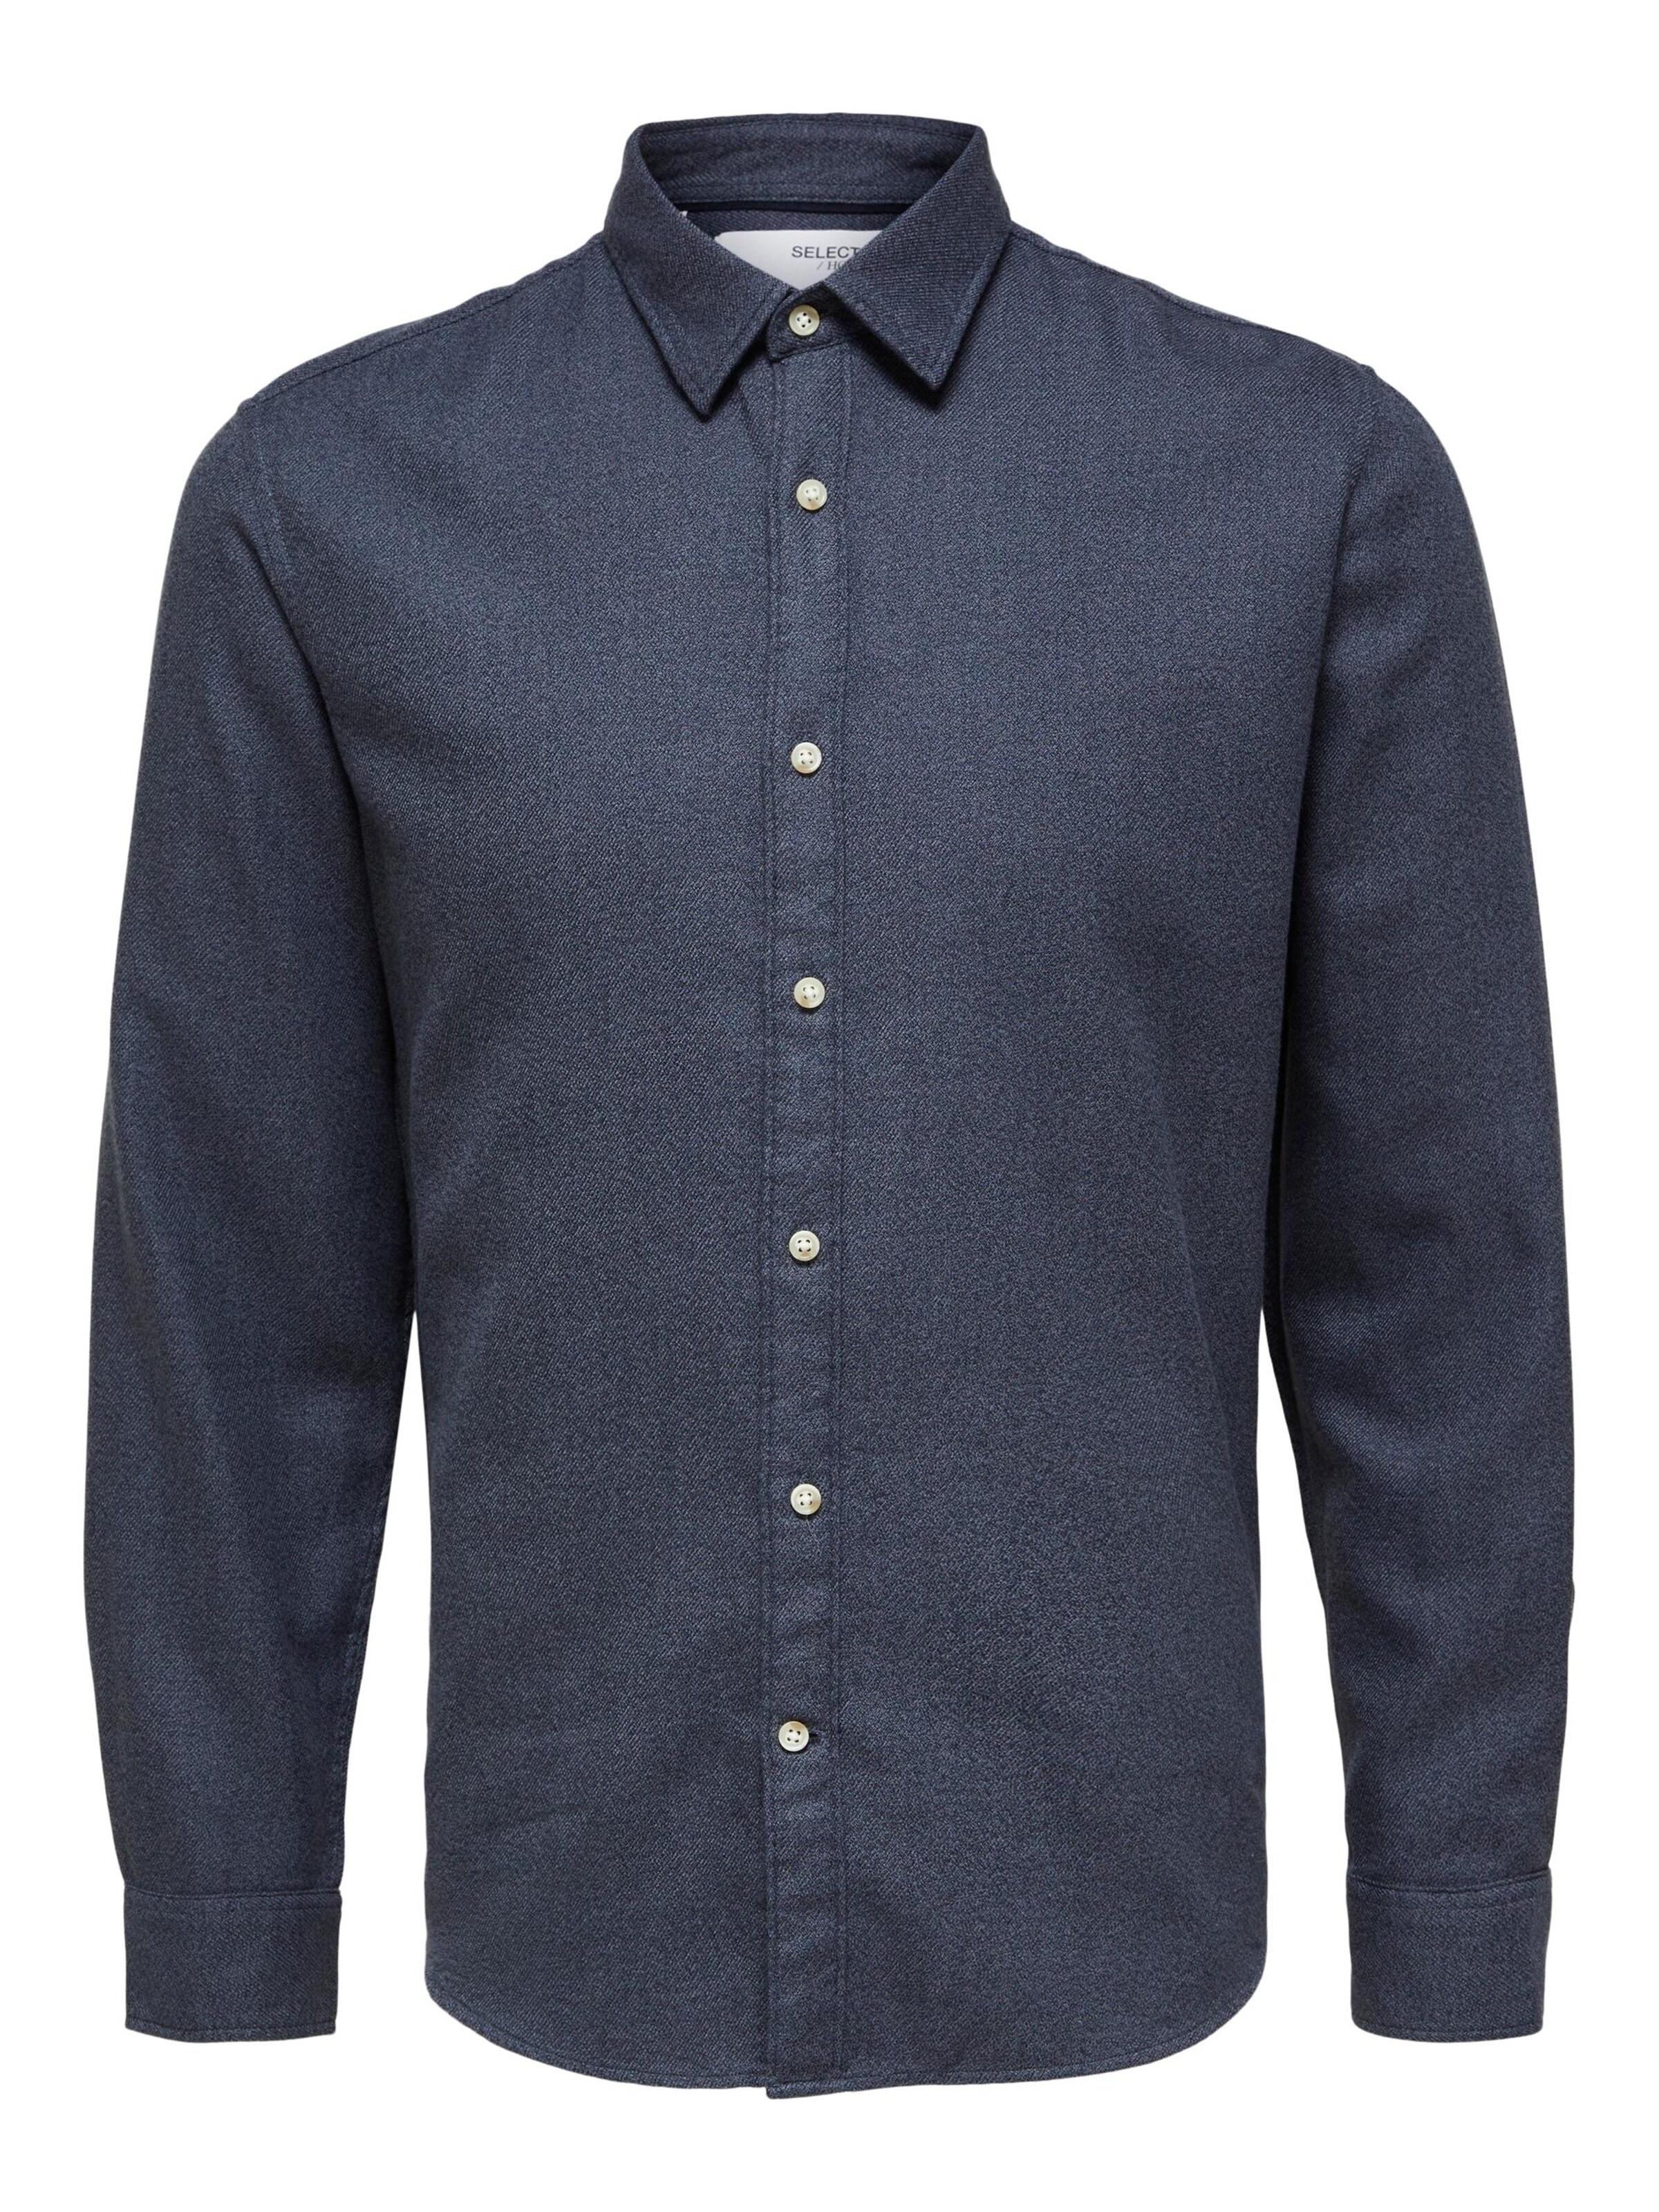 Blau L Rabatt 62 % HERREN Hemden & T-Shirts Jean Selected Hemd 